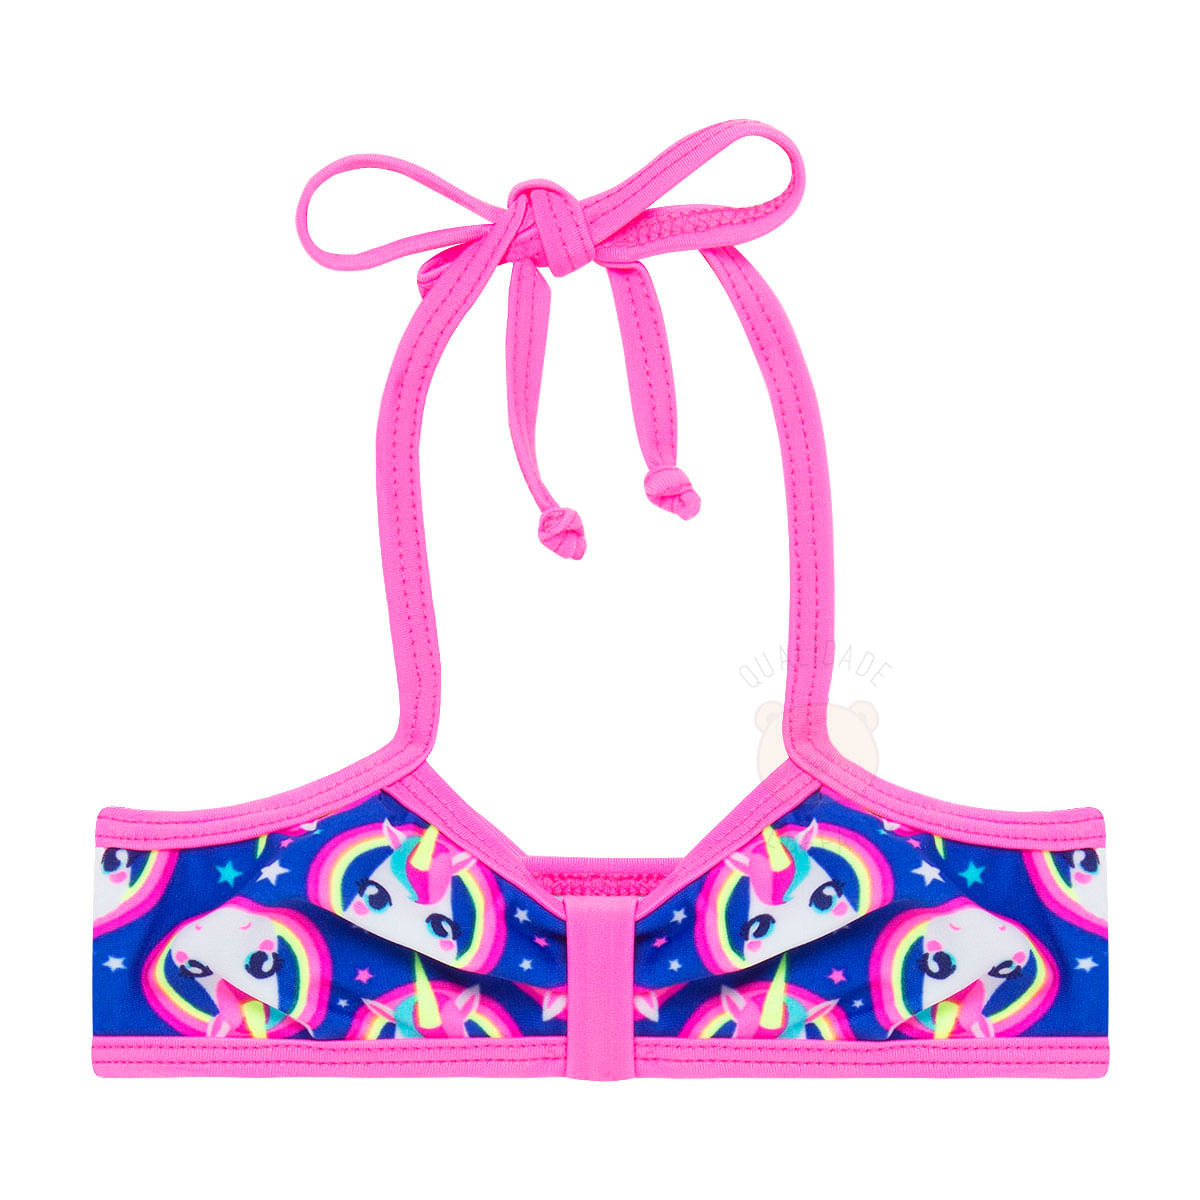 Biquíni Infantil Em Lycra Candy Unicorn Puket No Bebefacil Onde Você Encontra Tudo Em Roupas